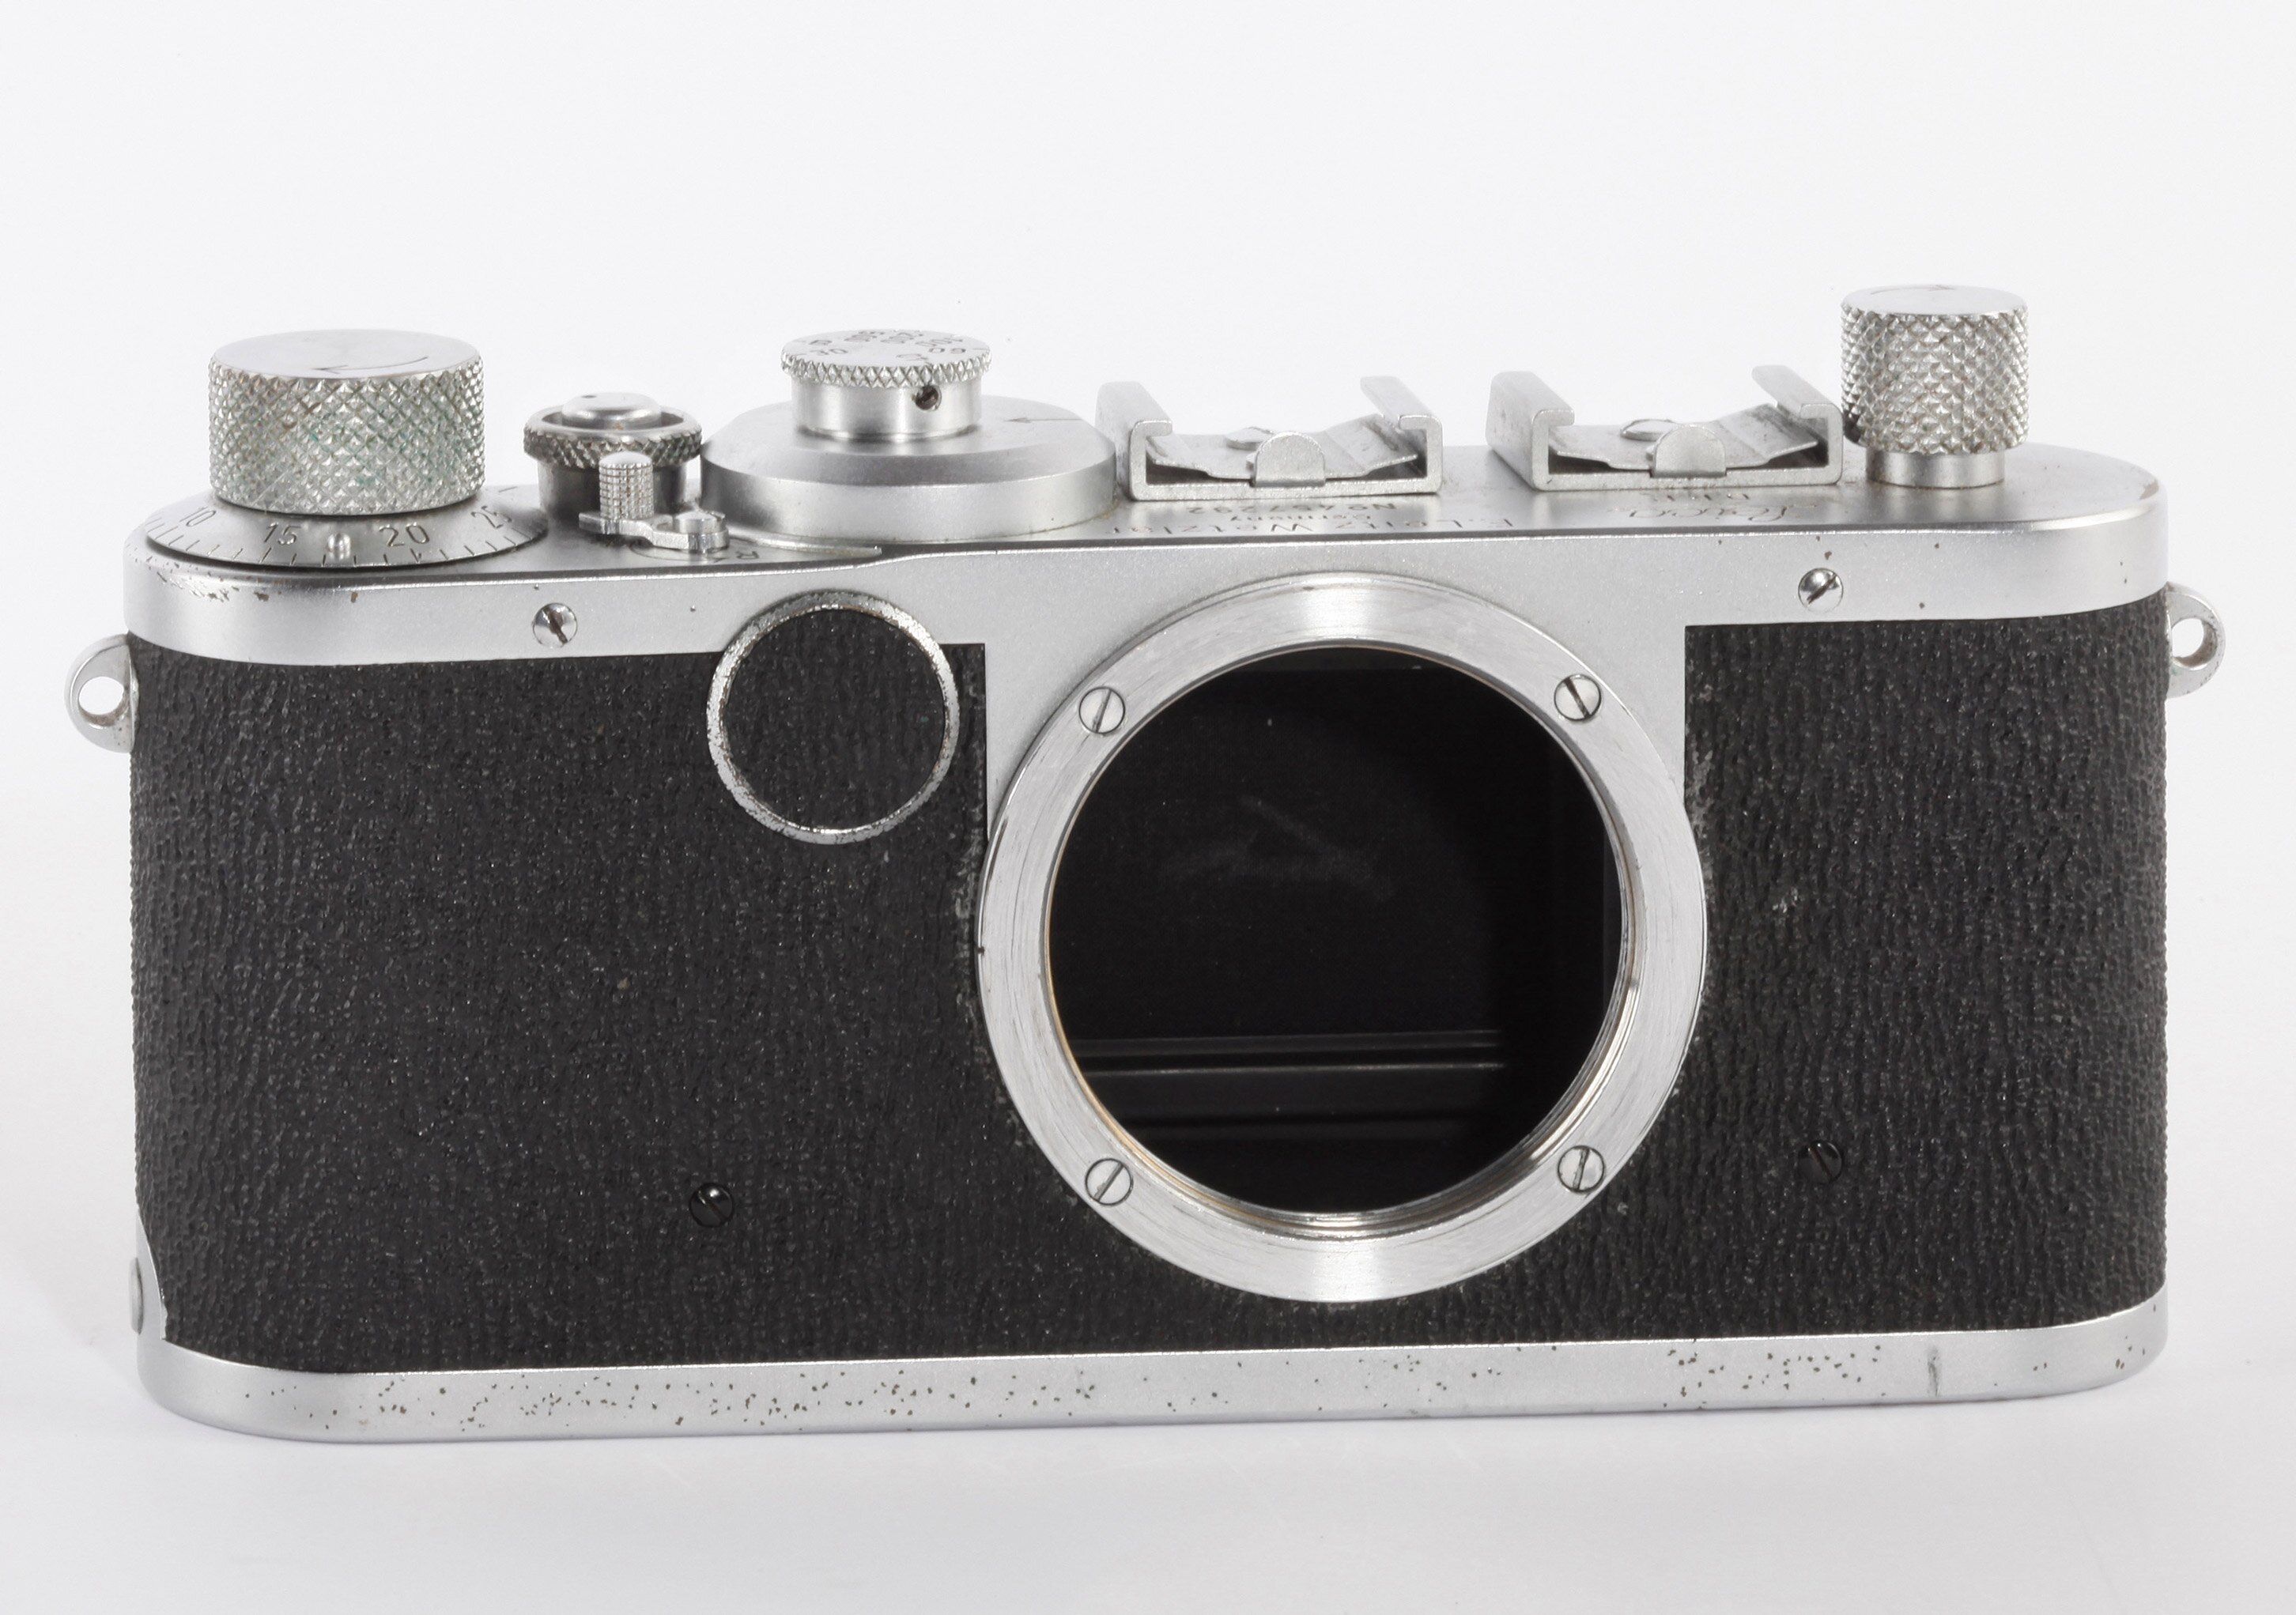 Leica Ic Gehäuse M39 LTM Bj1949/50 Shark Skin erste Serie umfast 500 Stück